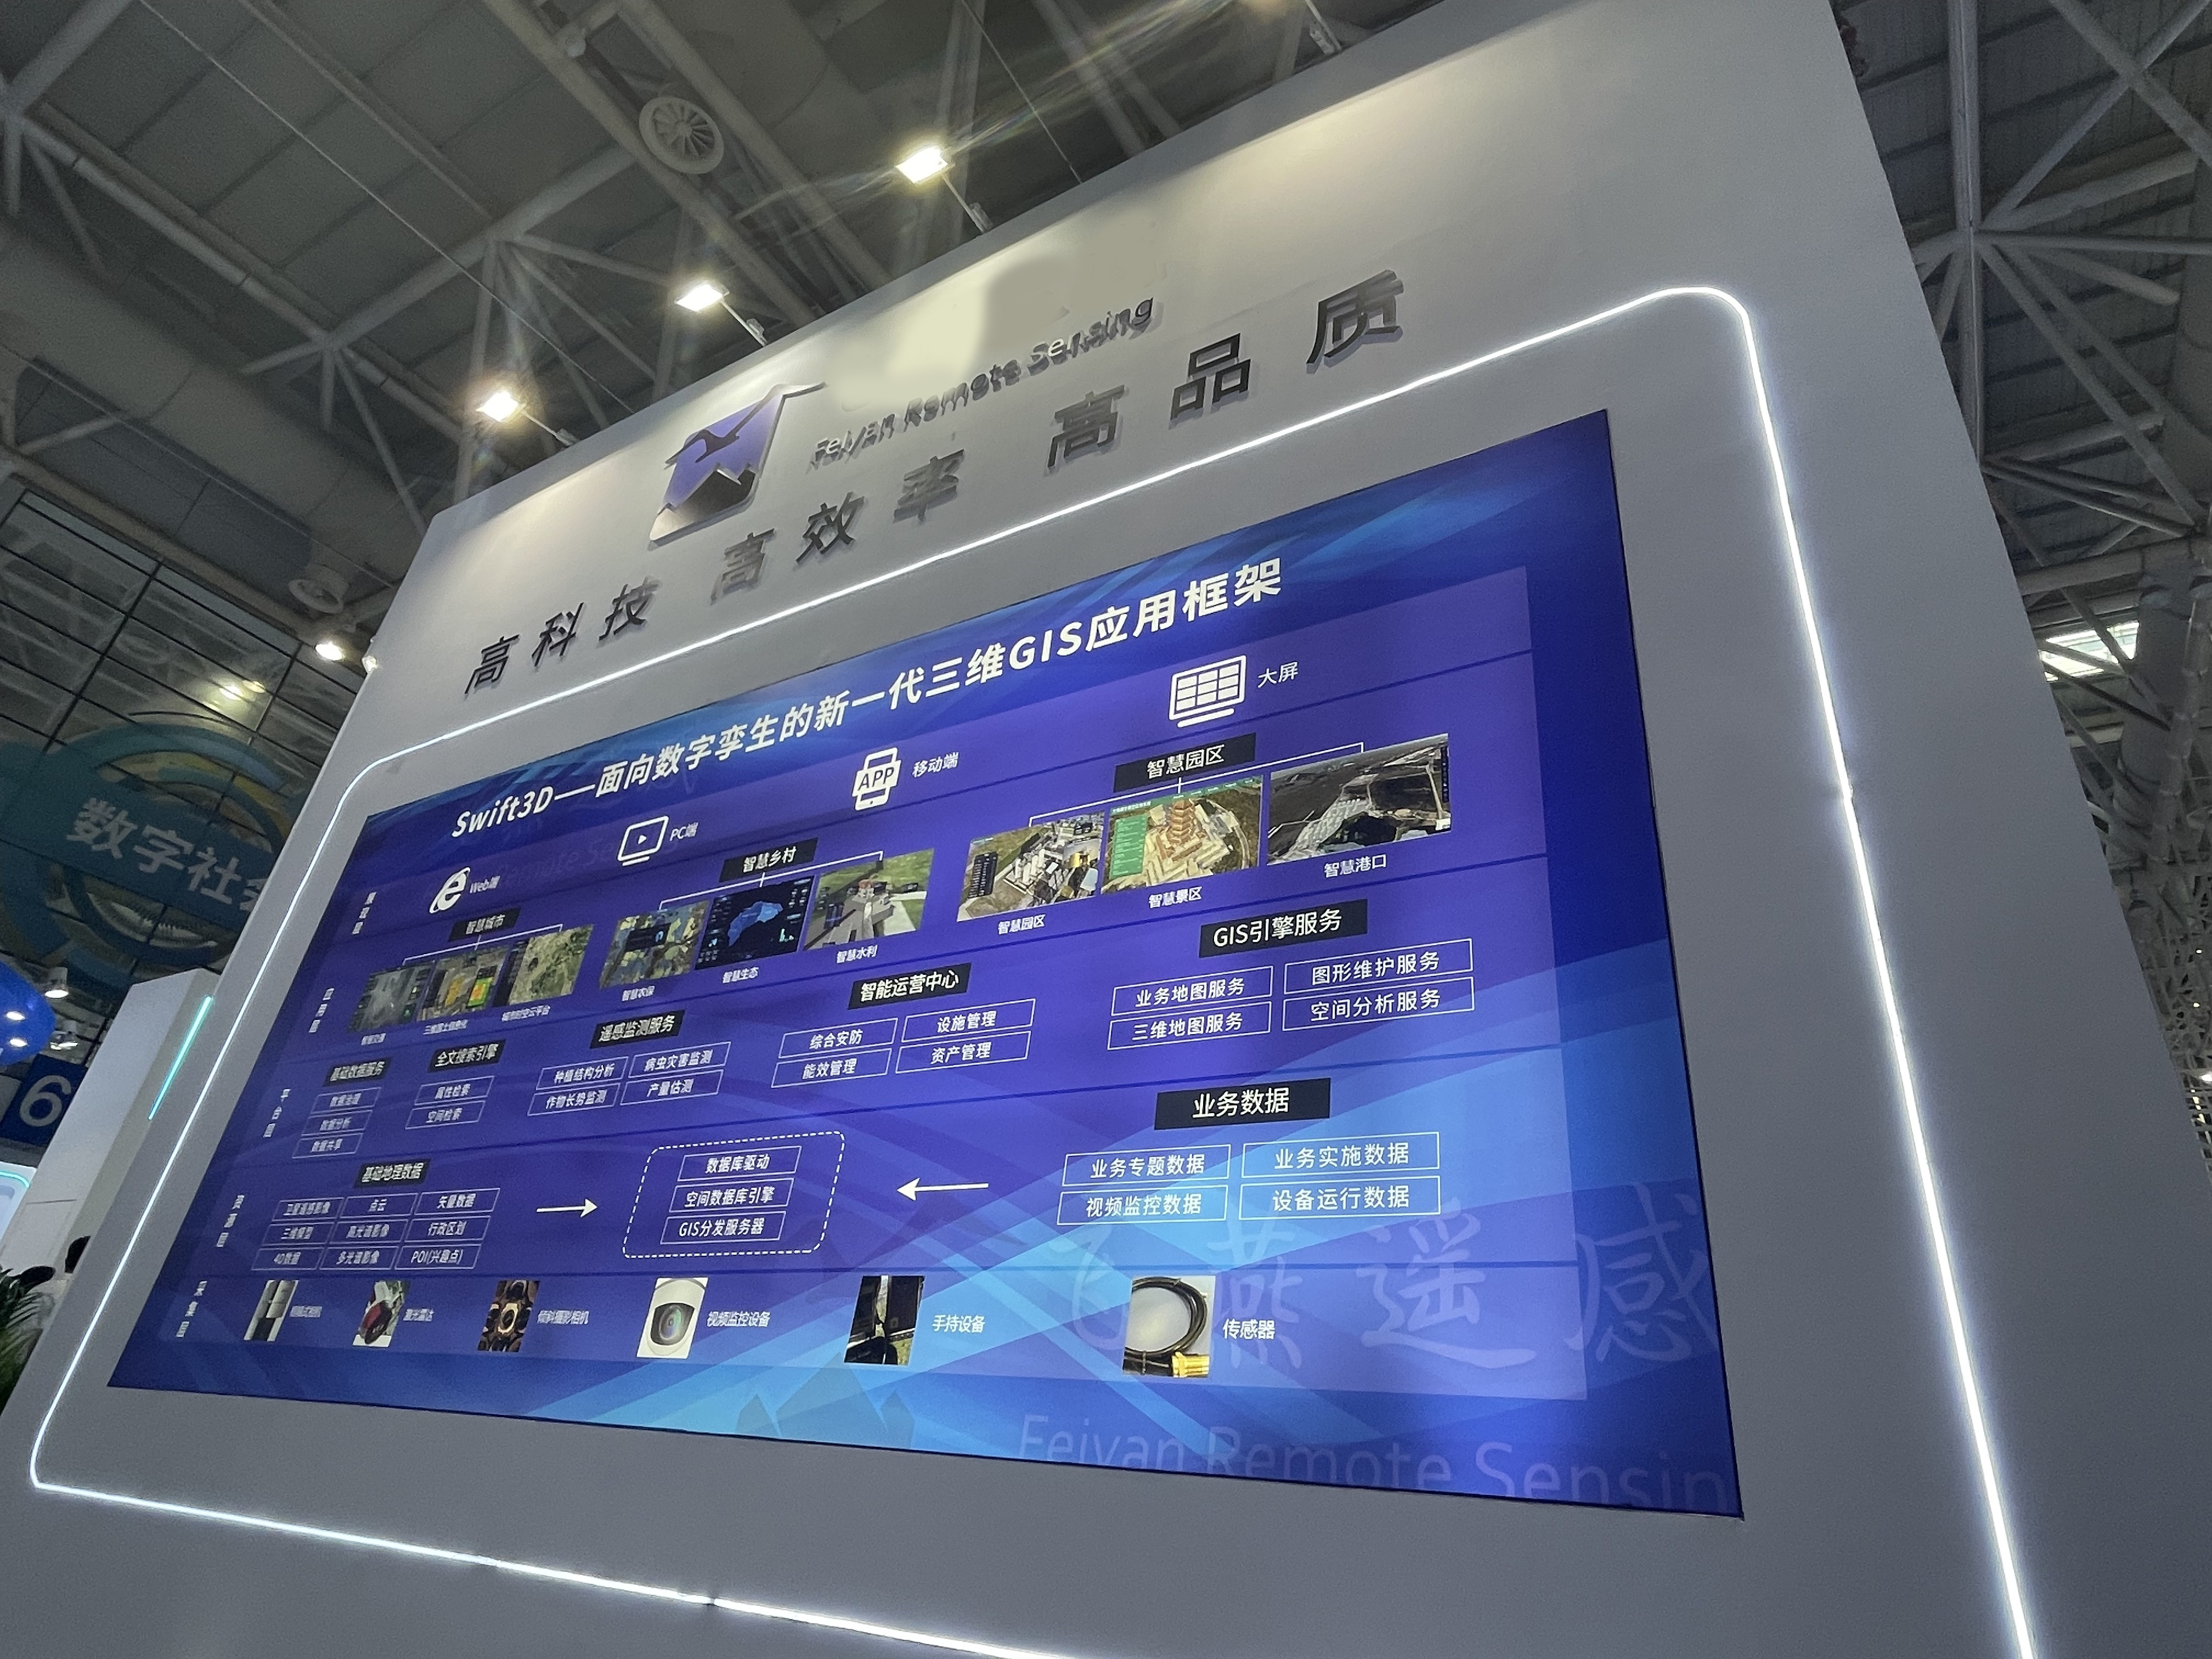 飞燕遥感携AIMS航空遥感解决方案亮相第五届数字中国建设成果展览会，为实景三维中国建设赋能